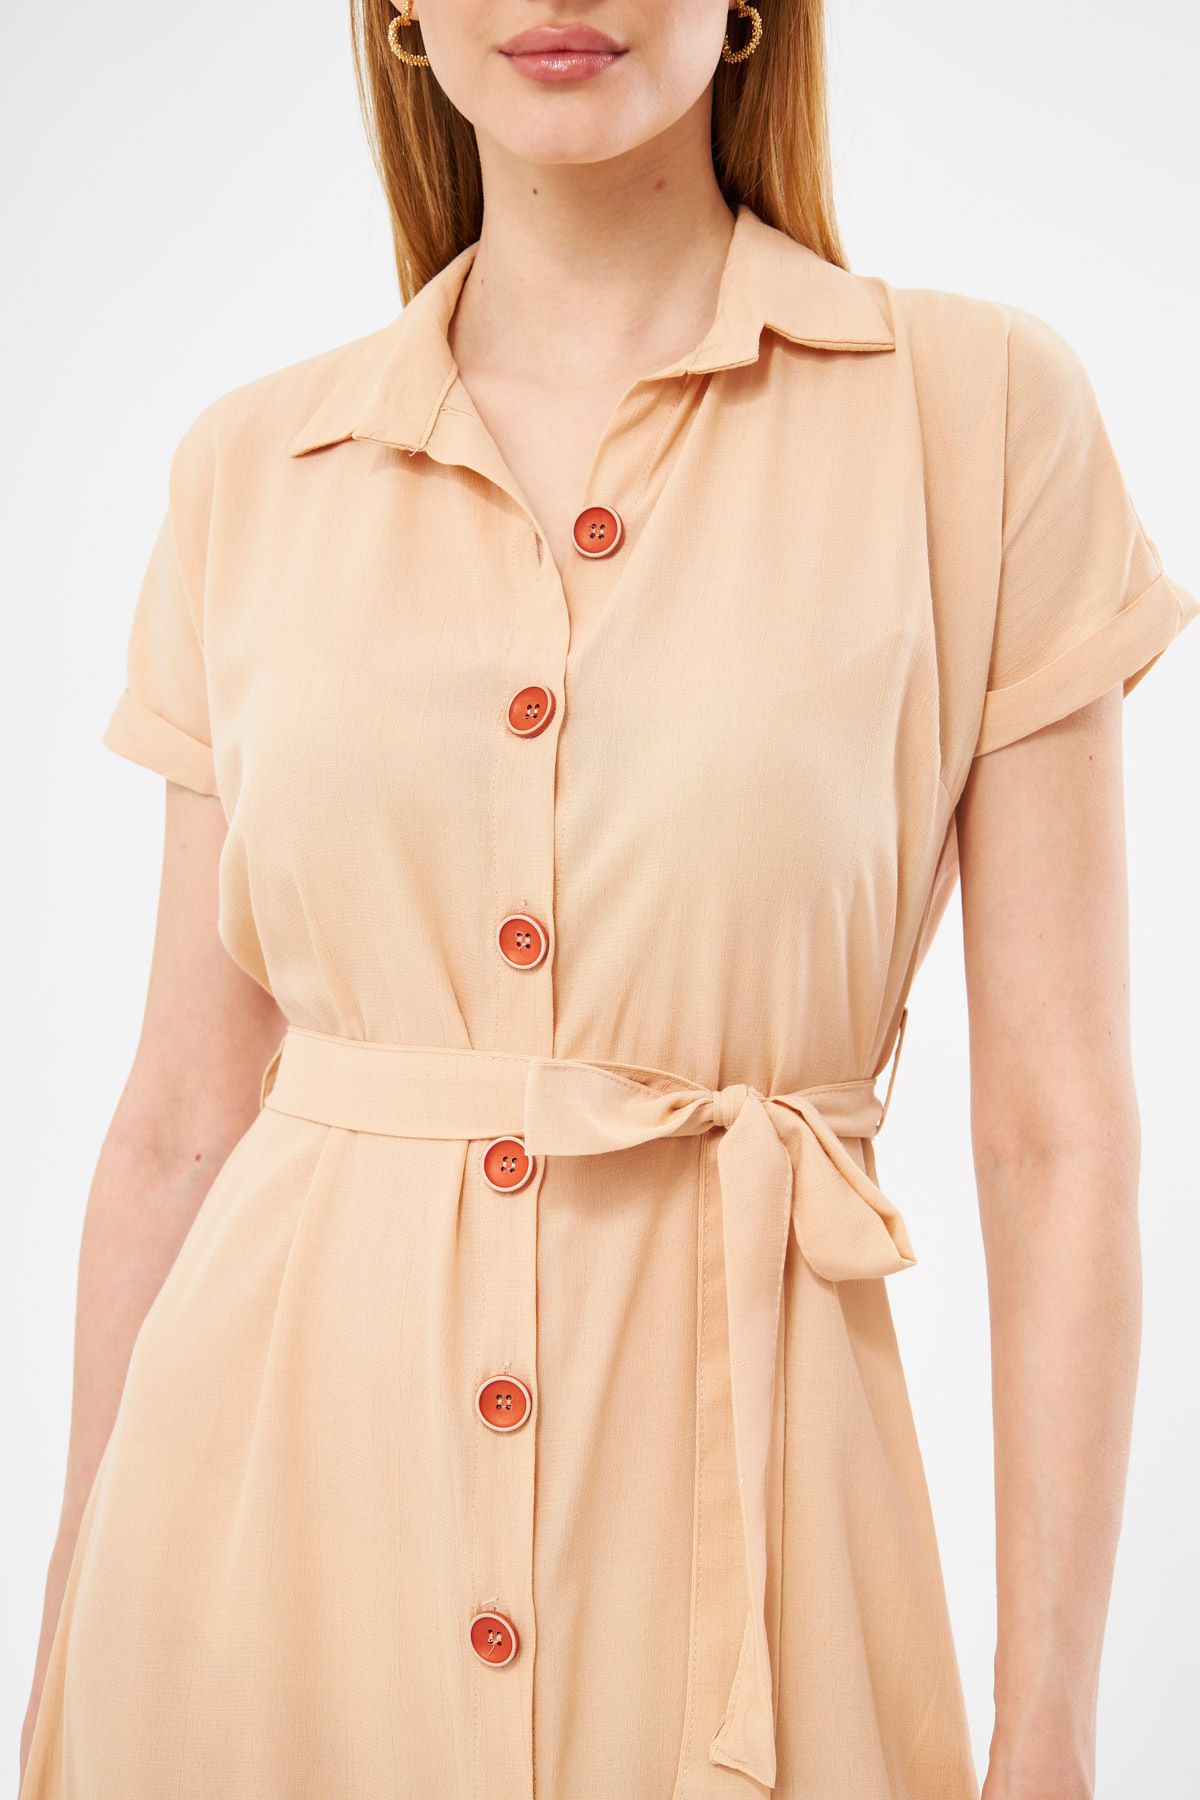 Kadın Krem Beli Kemerli Kısa Kol Gömlek Elbise ARM-19Y001068